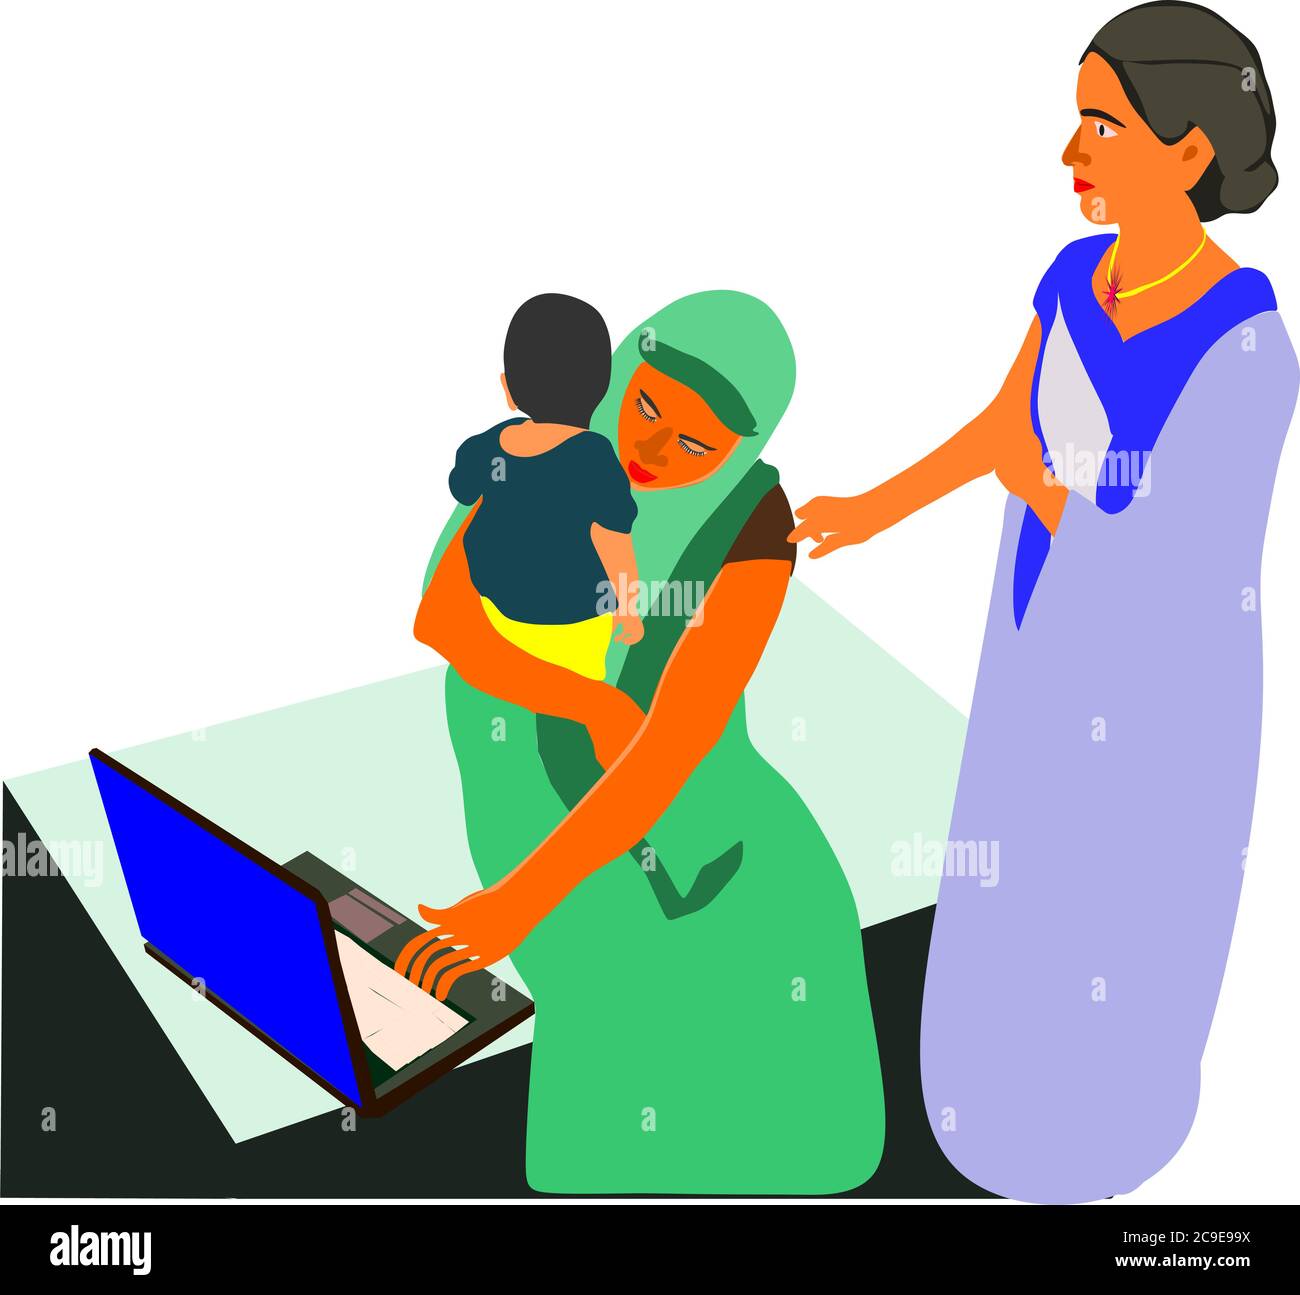 Une dame de dessin animé d'un village indien qui apprend la technologie informatique en tenant son petit enfant sur les genoux à un milieu éducatif isolé. Illustration de Vecteur